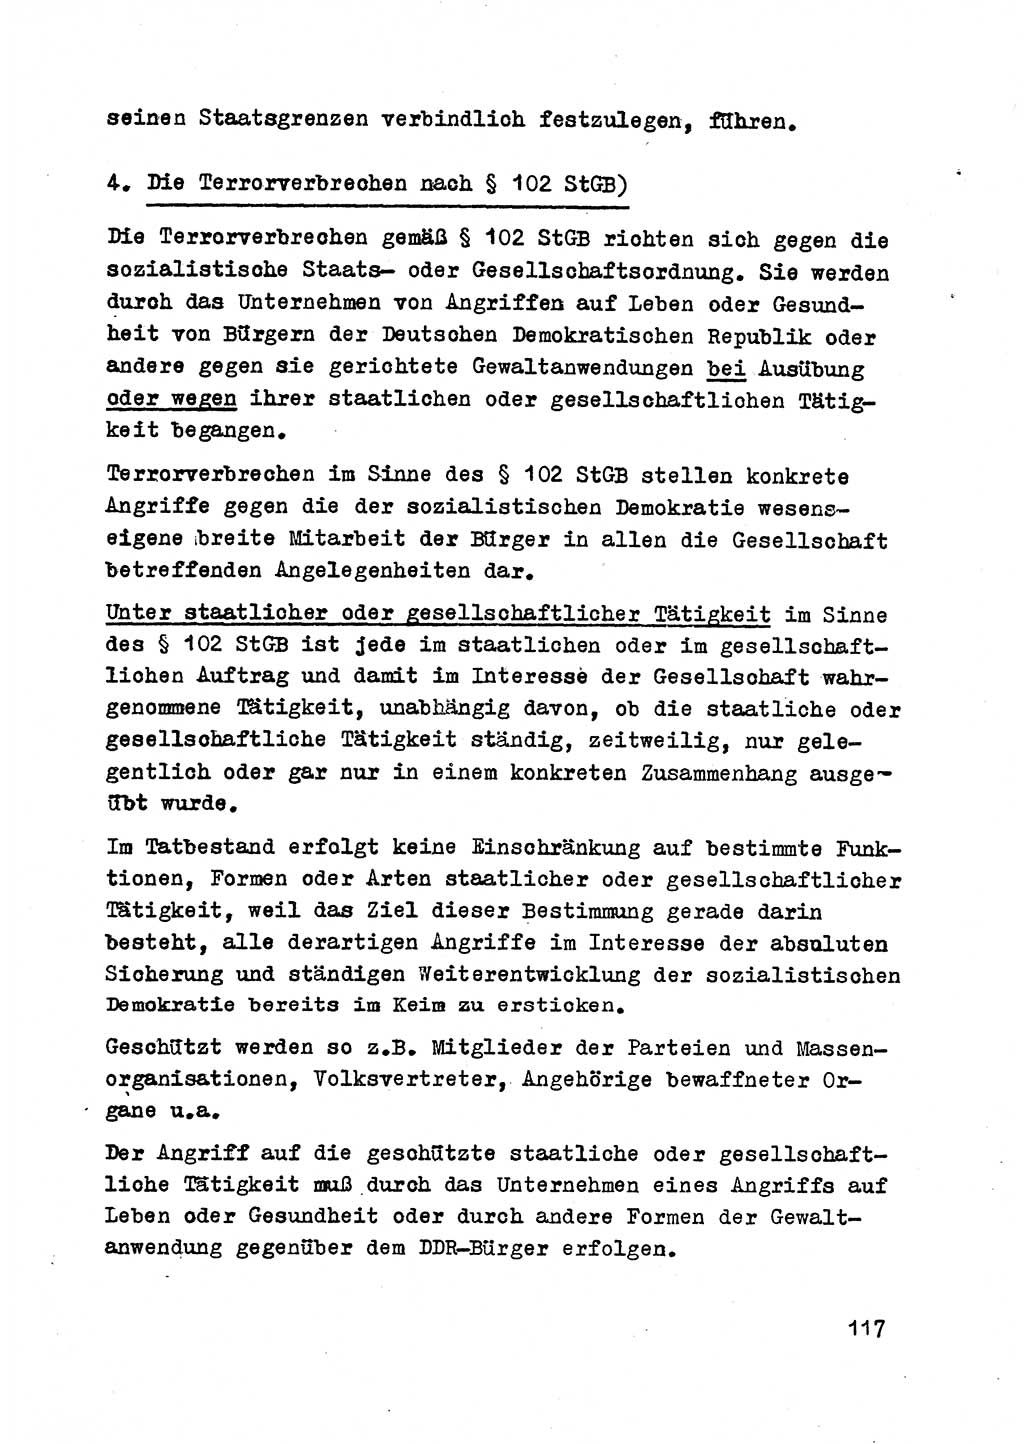 Strafrecht der DDR (Deutsche Demokratische Republik), Besonderer Teil, Lehrmaterial, Heft 2 1969, Seite 117 (Strafr. DDR BT Lehrmat. H. 2 1969, S. 117)